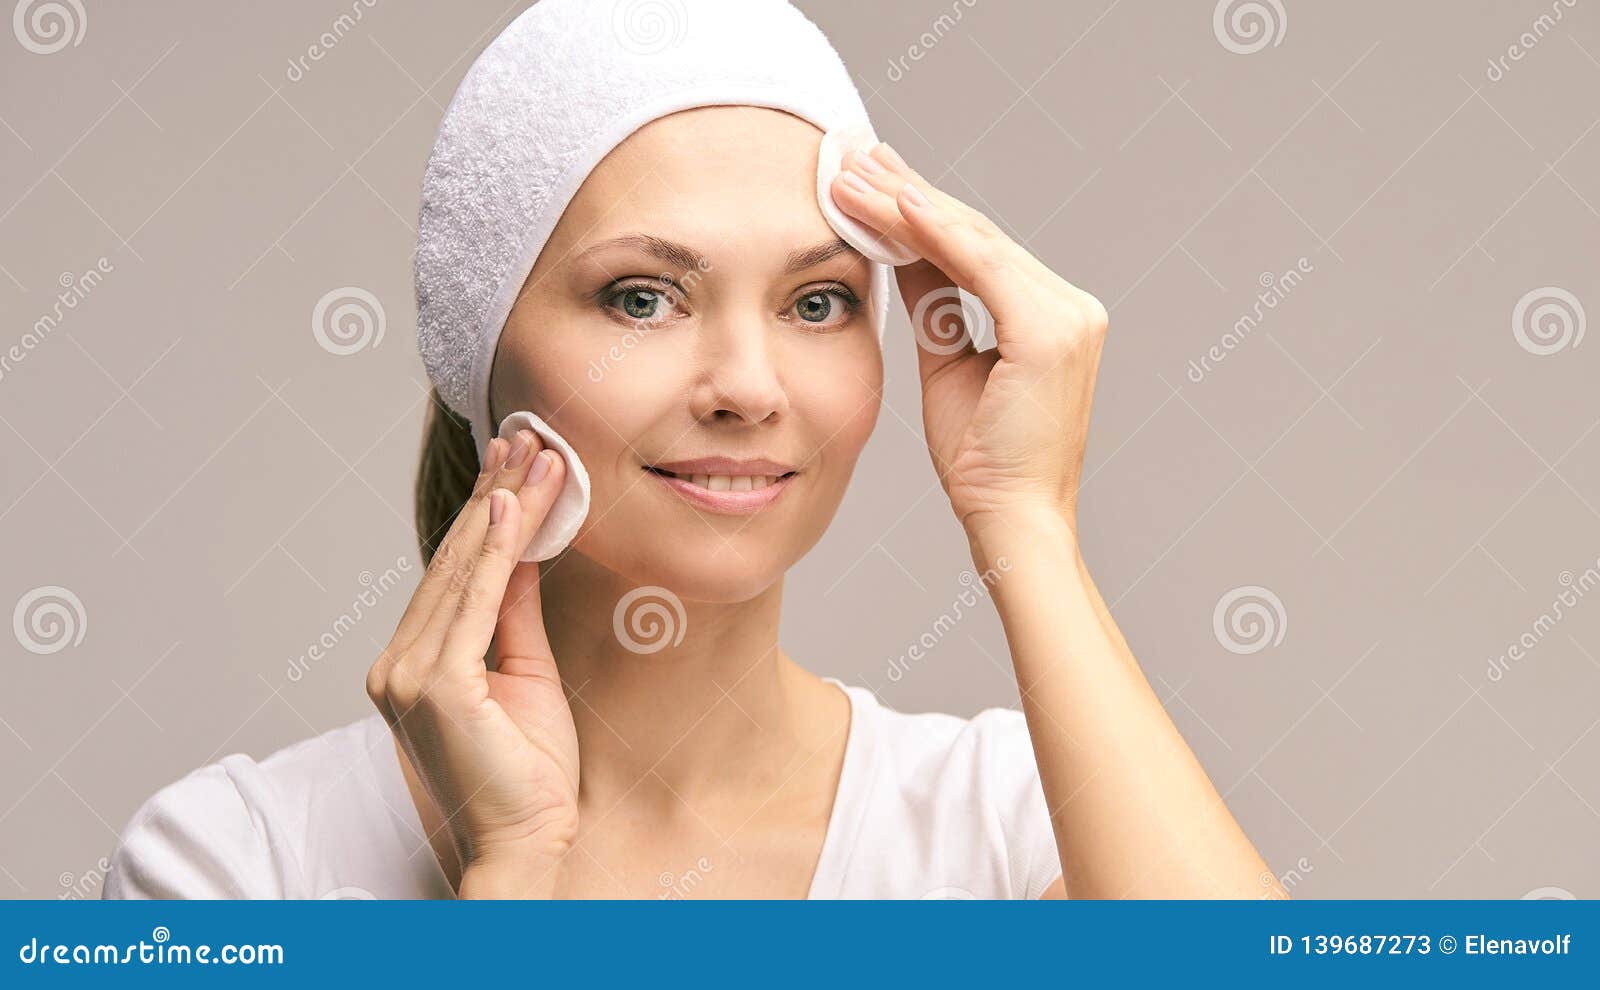 beauty woman natural make up. remove mascara. cotton pad